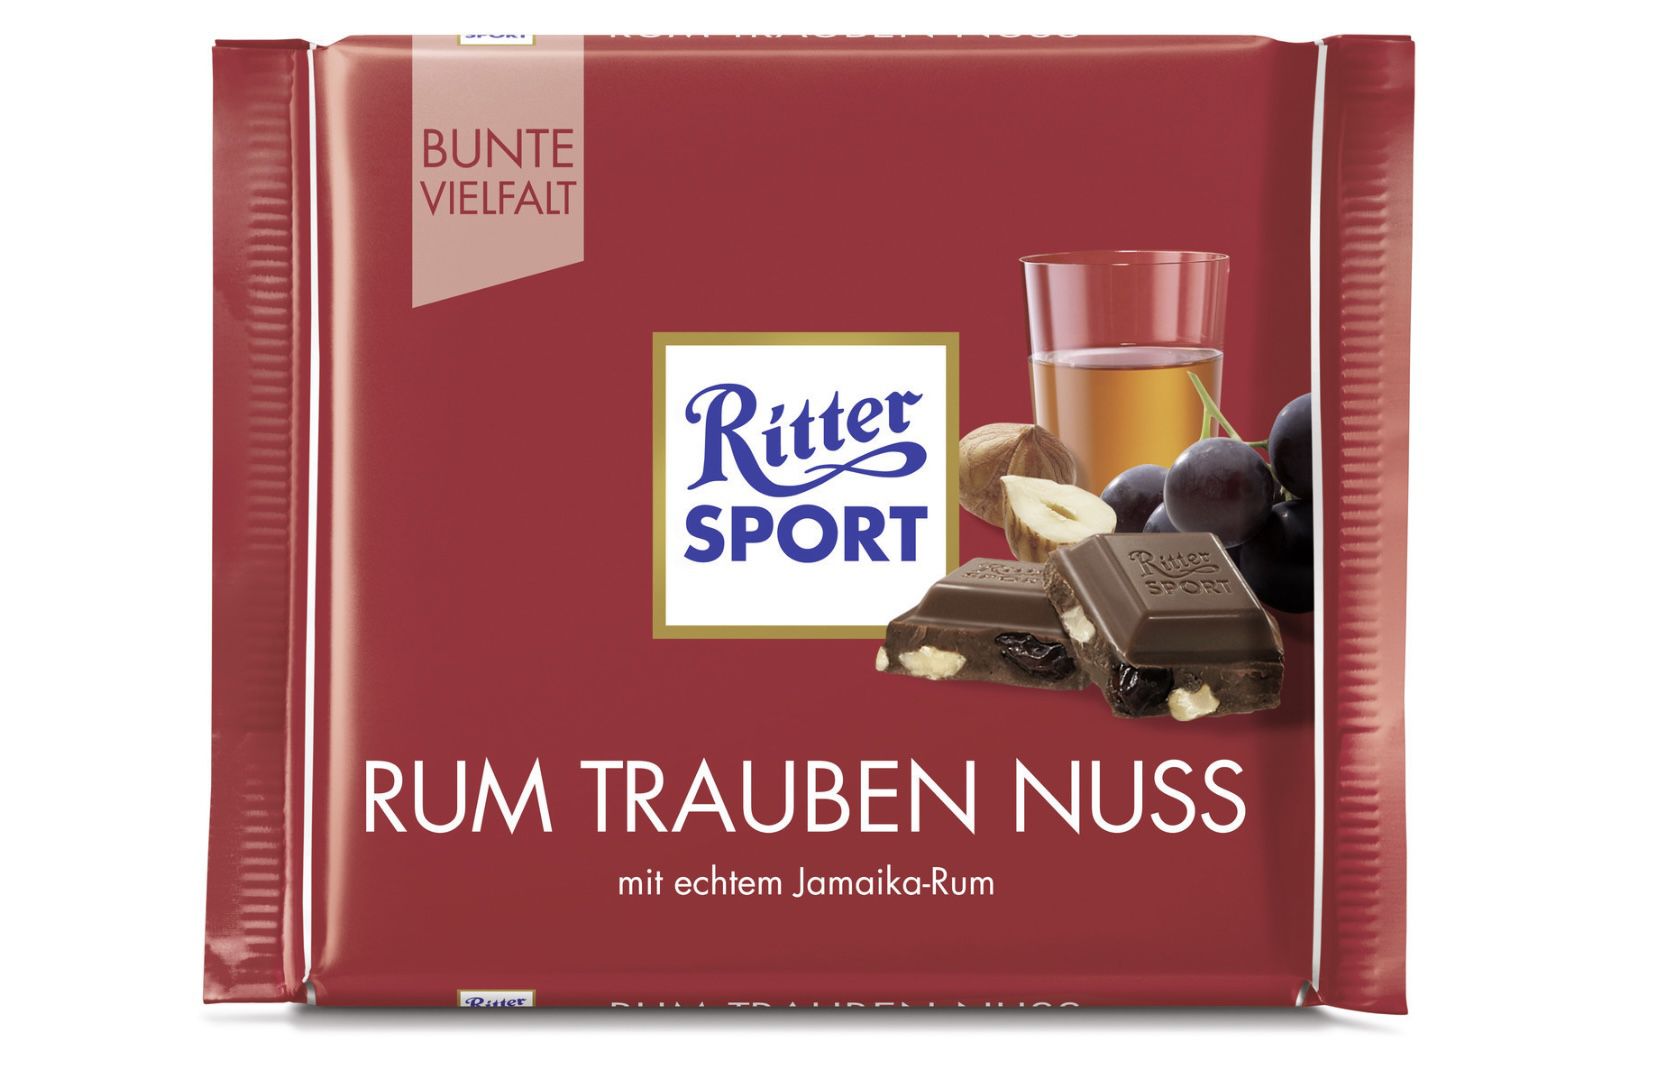 RITTER SPORT Rum Trauben Nuss 100g Vollmilchschokolade für 0,99€